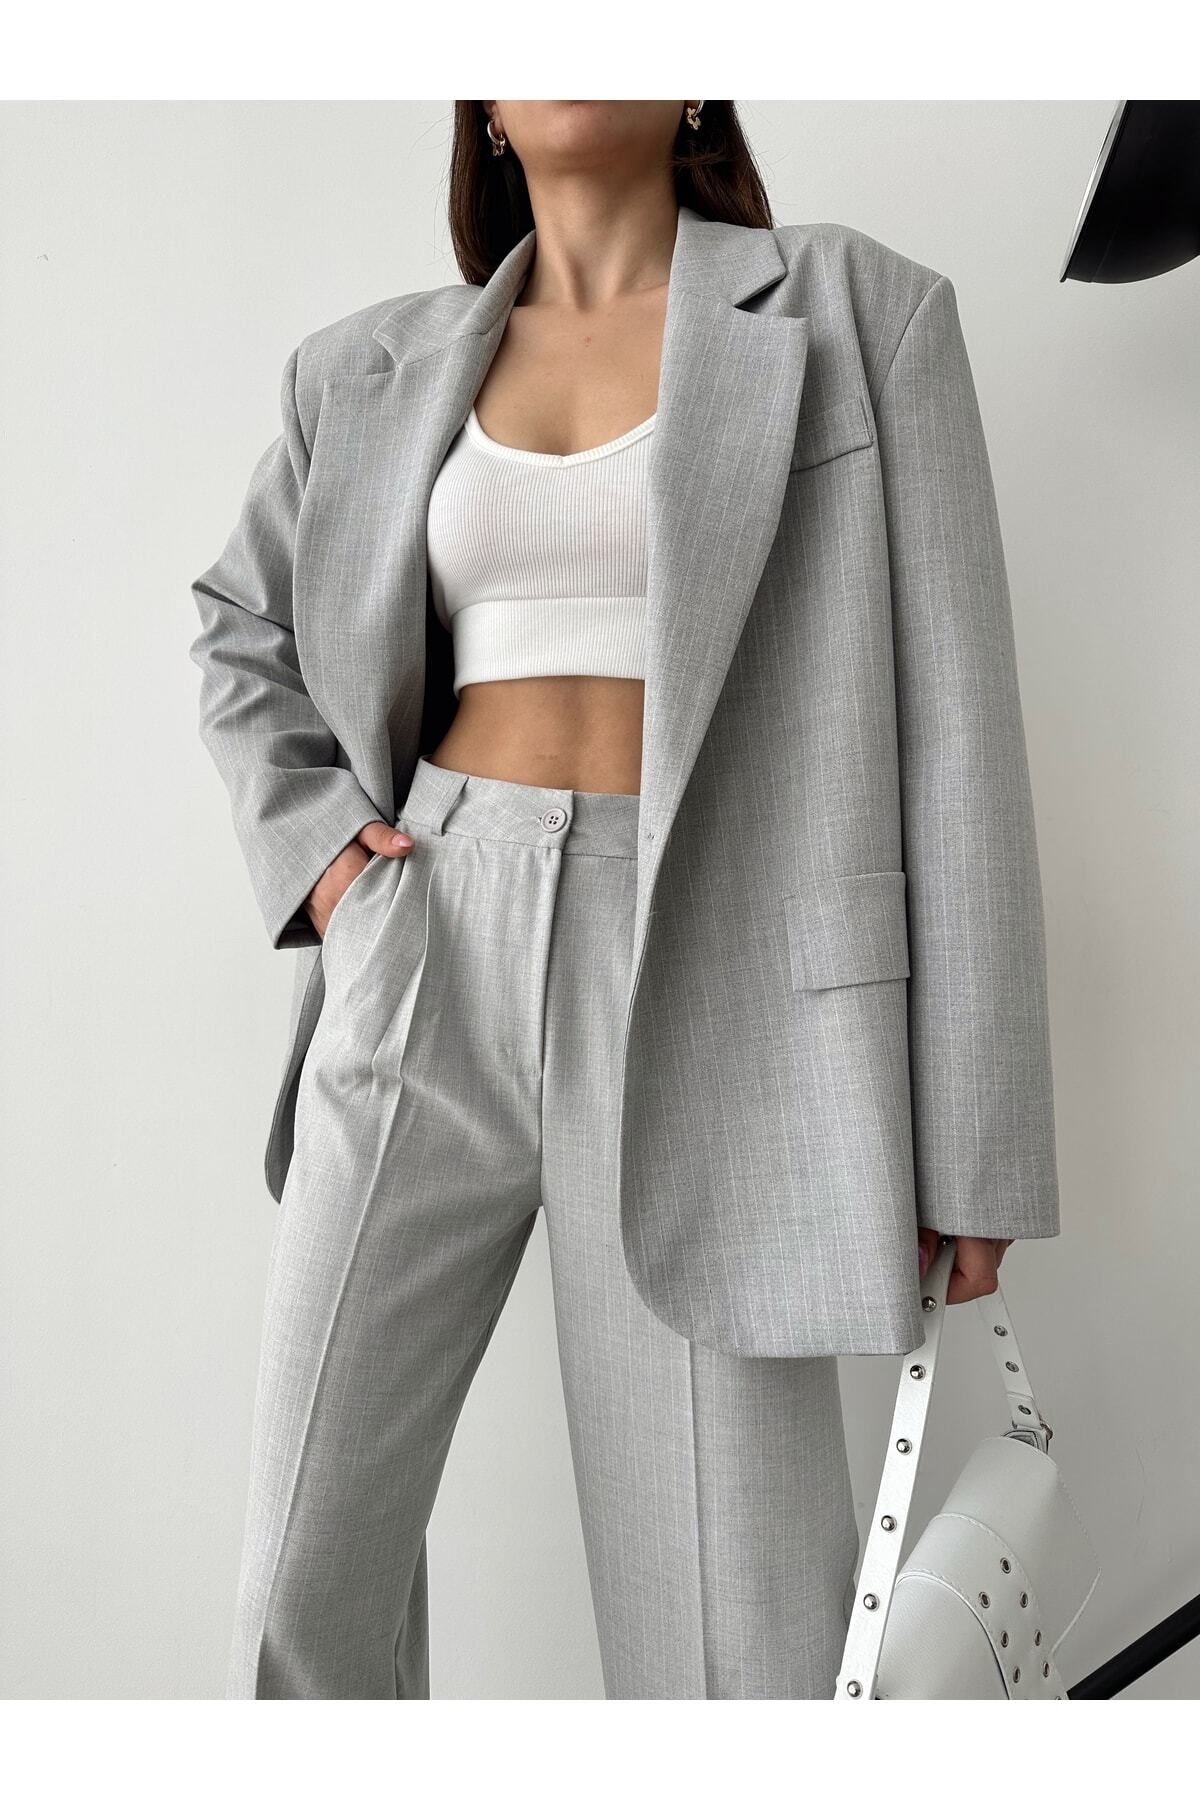 AÈC PRIVÈ Kadın Çizgili Içi Astarlı Blazer Ceket Pantolon Takım 5555